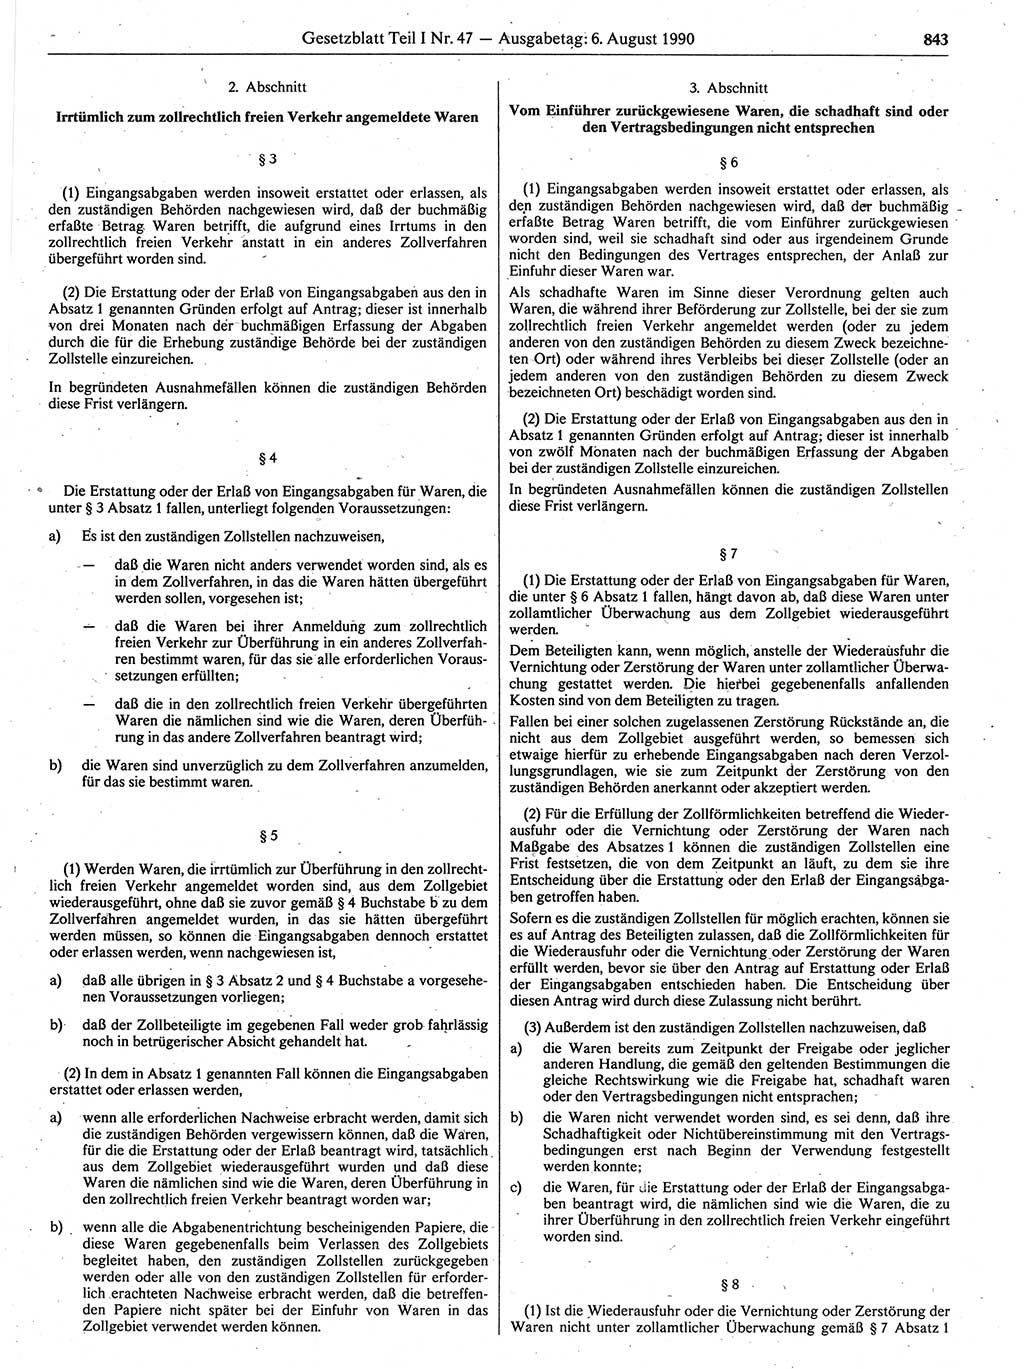 Gesetzblatt (GBl.) der Deutschen Demokratischen Republik (DDR) Teil Ⅰ 1990, Seite 843 (GBl. DDR Ⅰ 1990, S. 843)